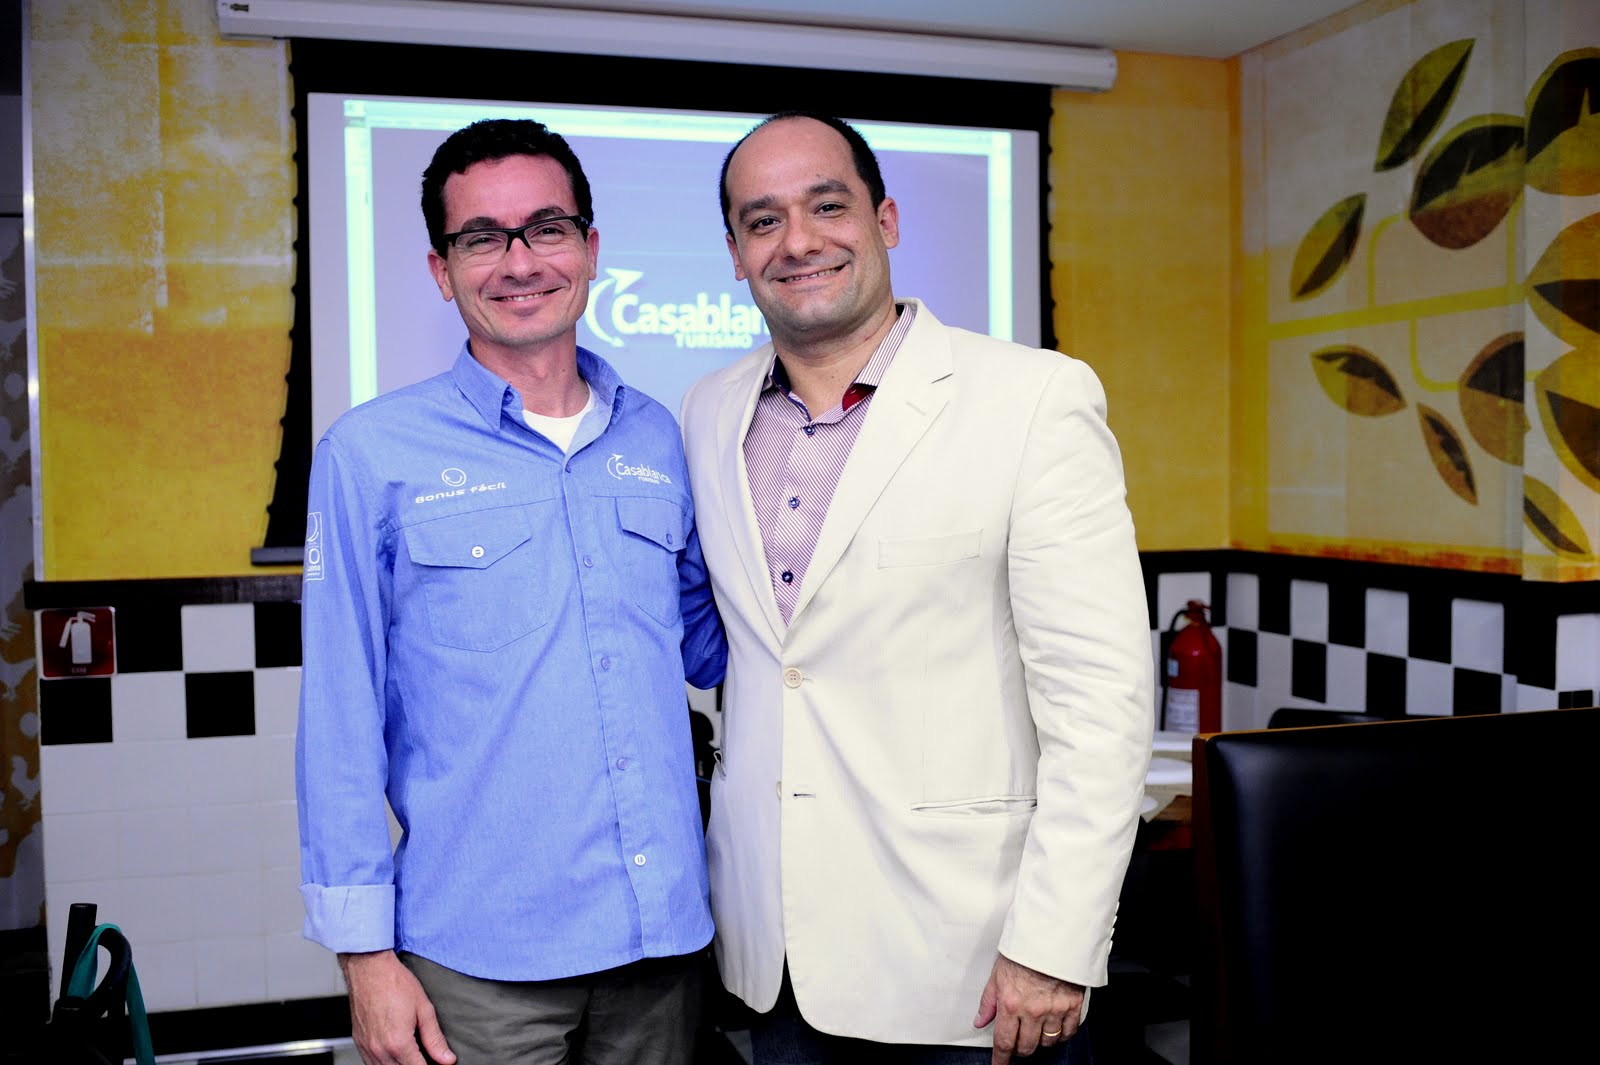 Grupo Casablanca Turismo abre filial no Rio de Janeiro